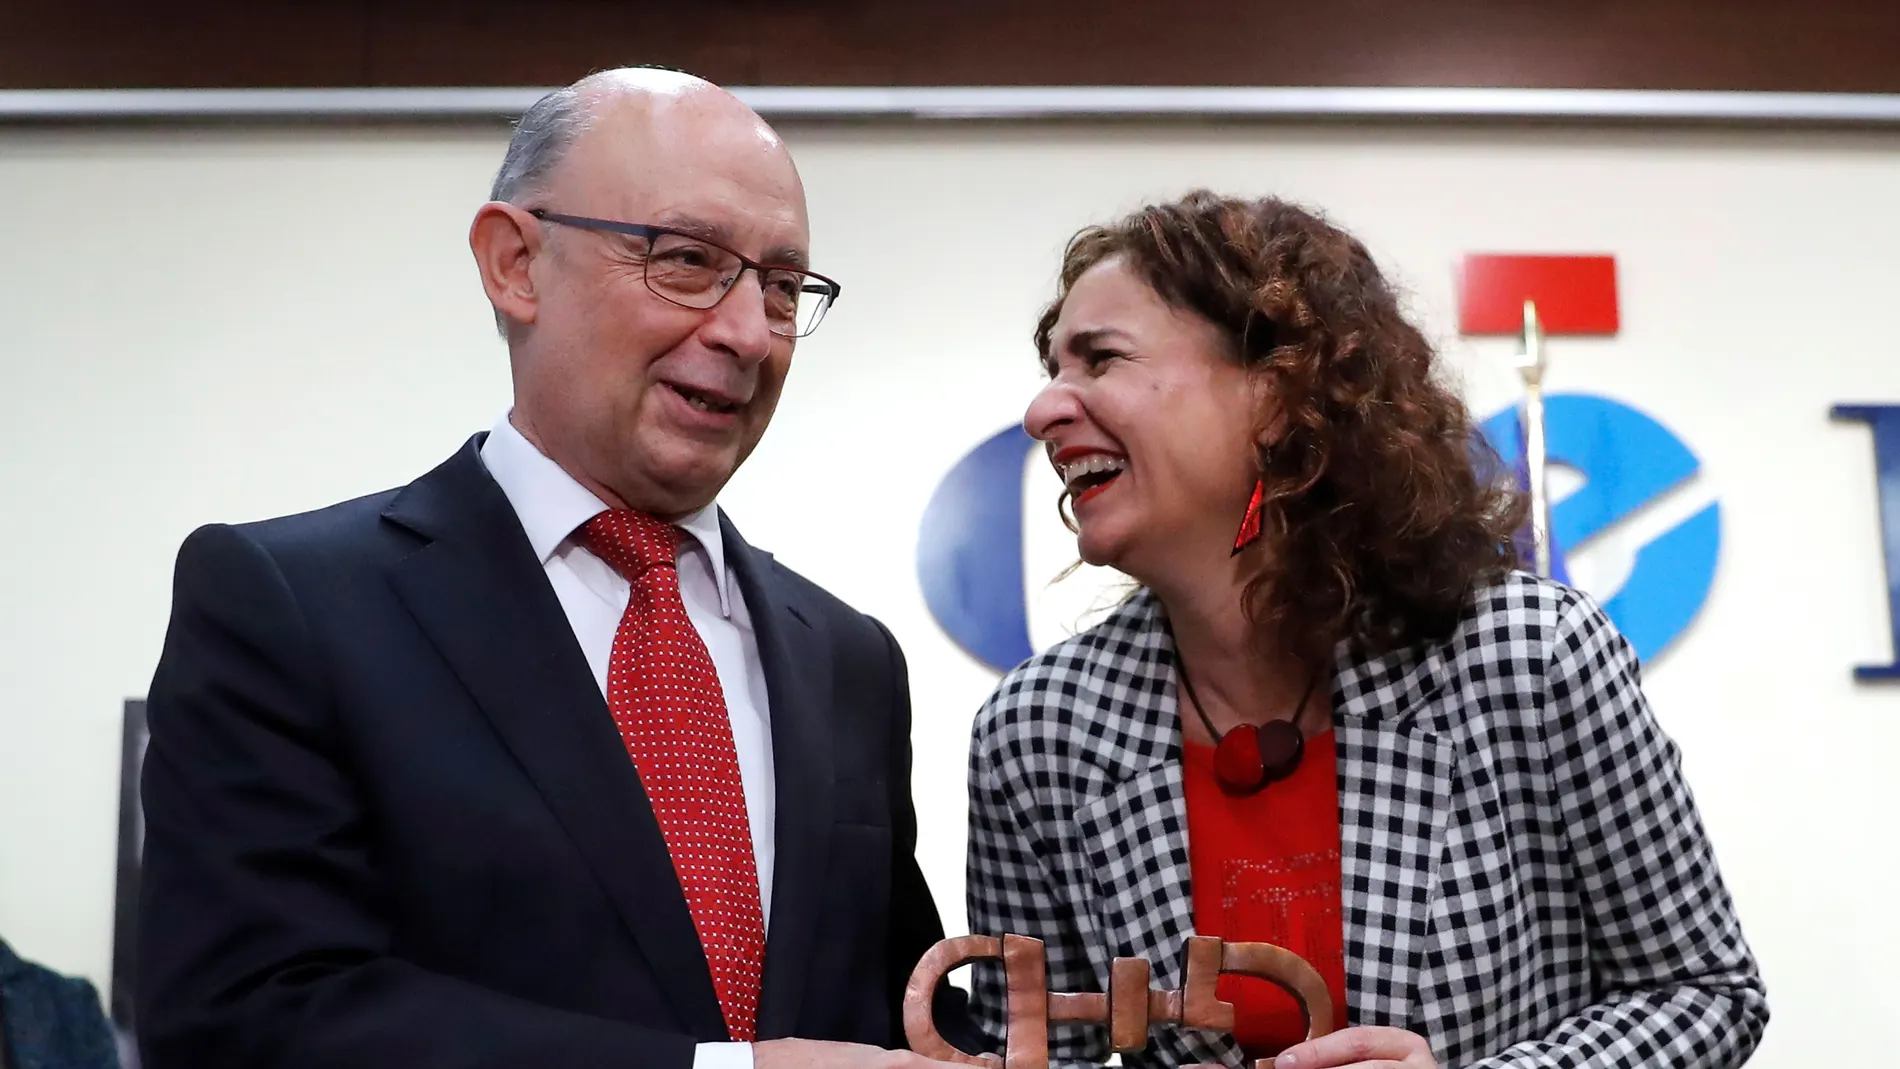 El exministro Montoro y la ministra Montero recogen juntos el premio CERMI